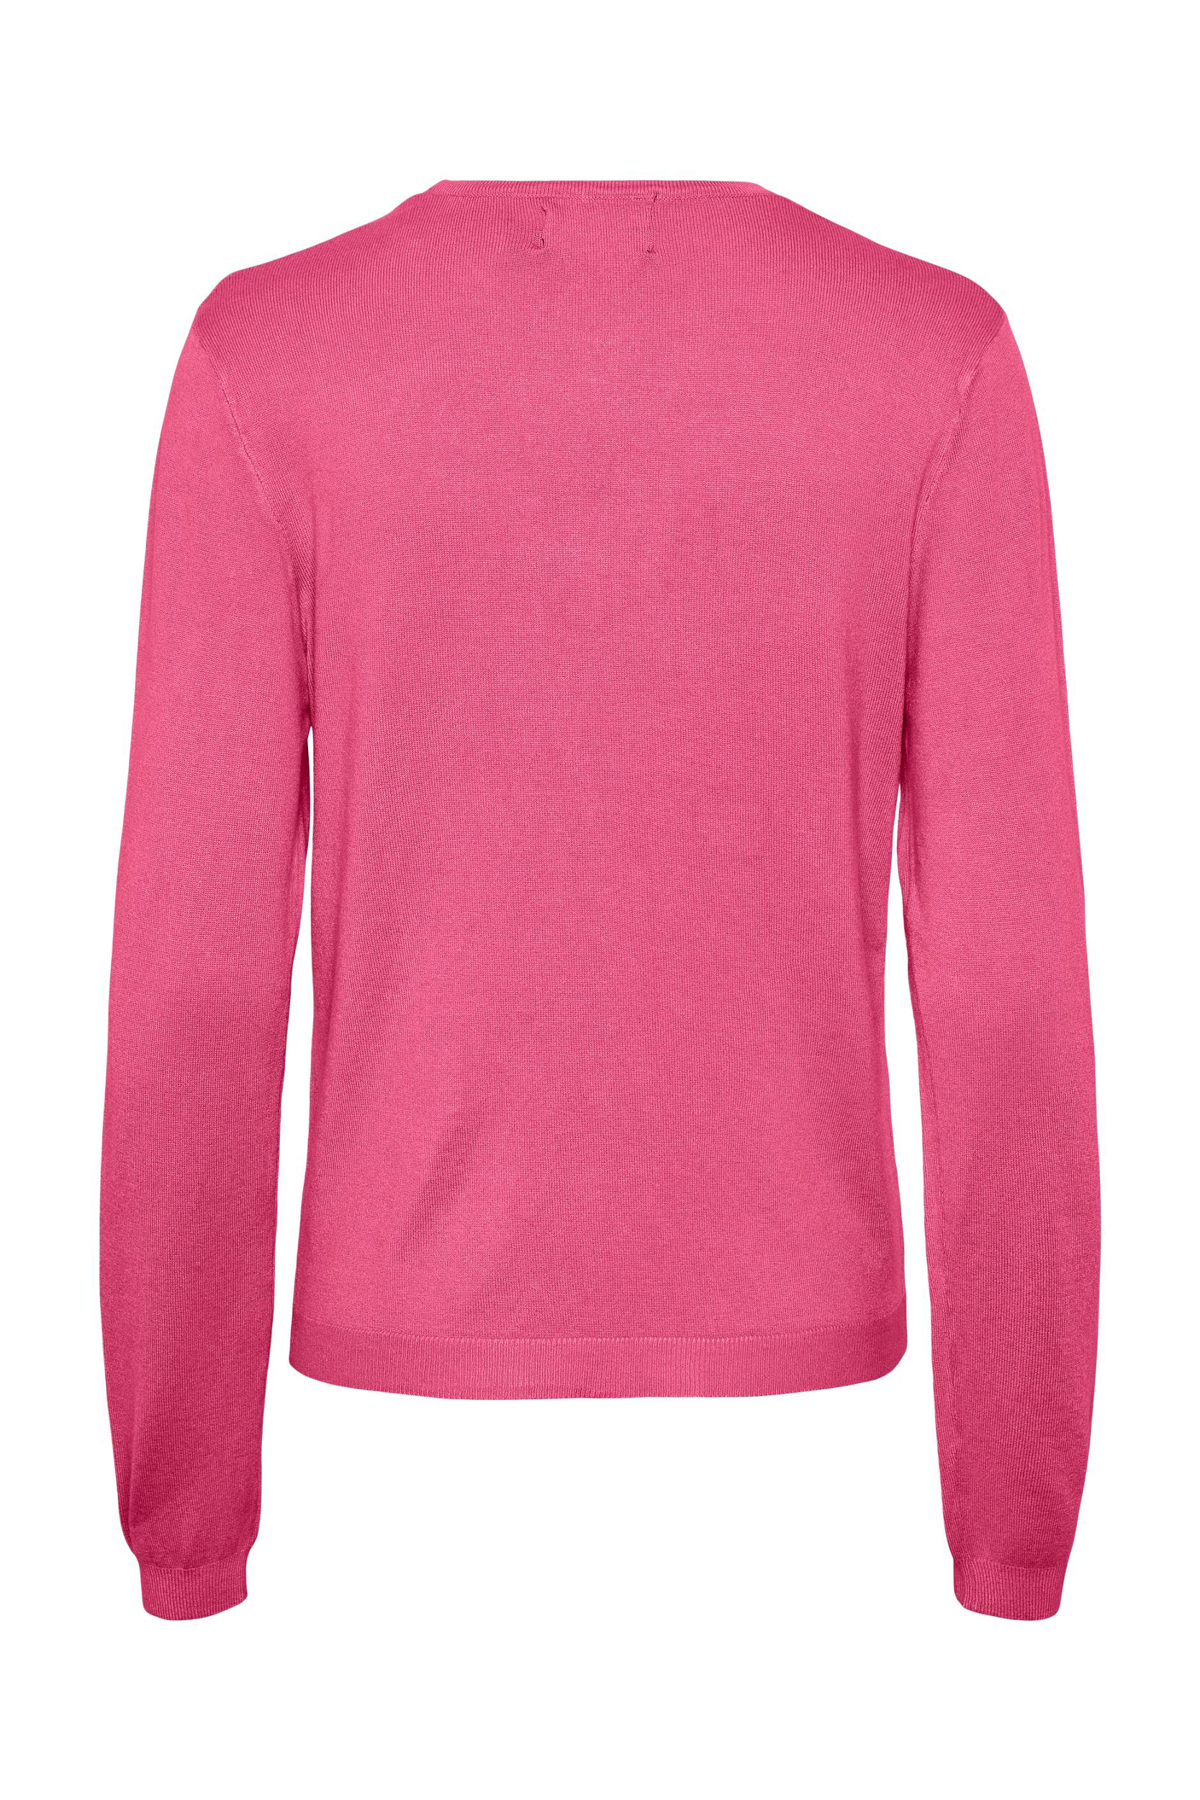 Свитер - Розовый - Классический крой PIECES, розовый свитер розовый классический крой pieces розовый